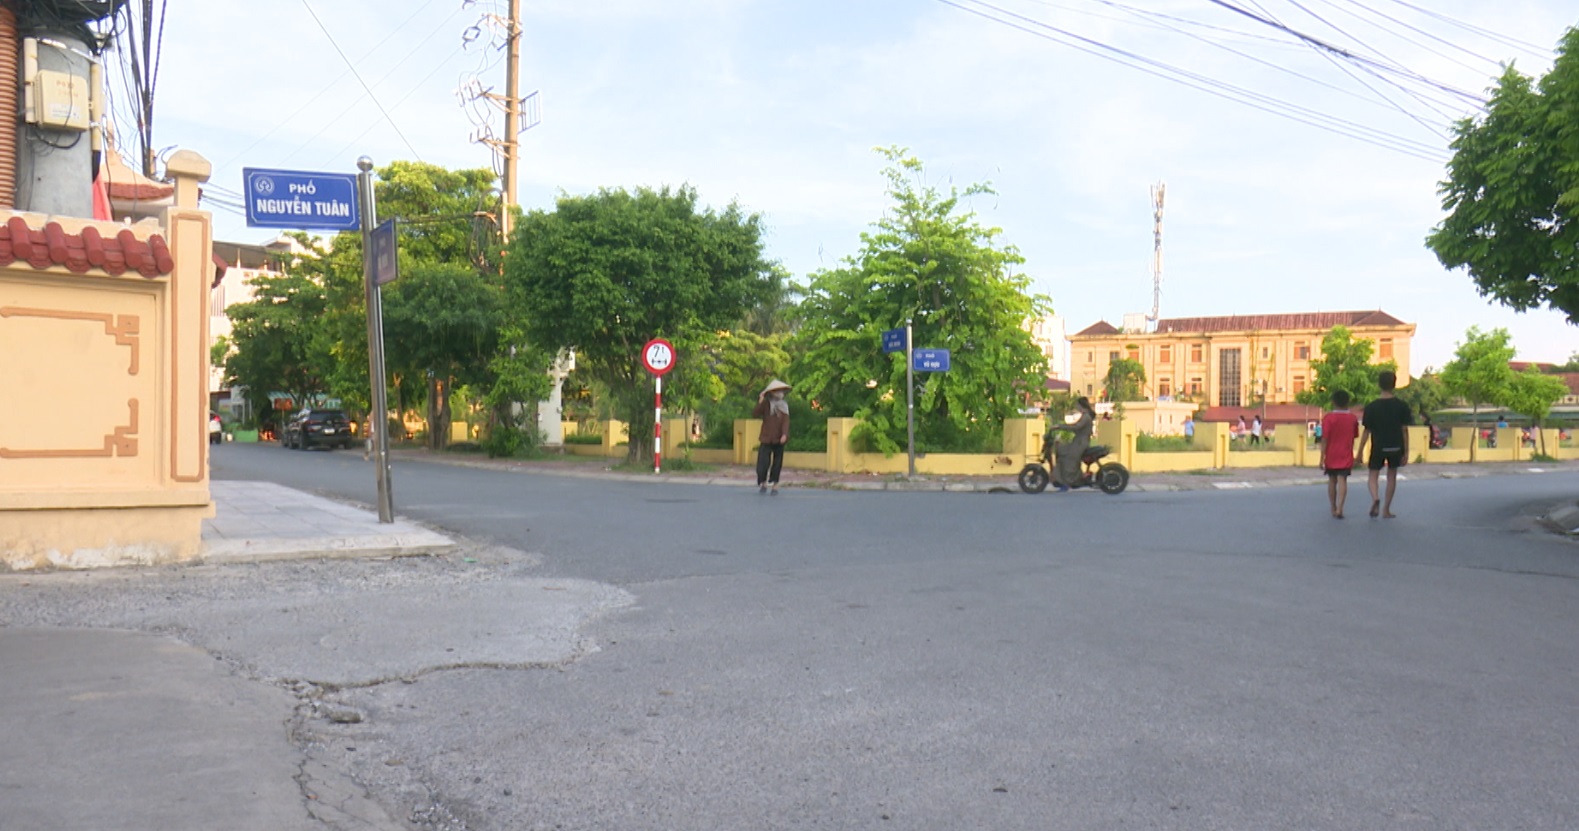 Cần sớm xử lý bất cập nút giao thông phố Vũ Hựu - Nguyễn Tuân - Đức Minh